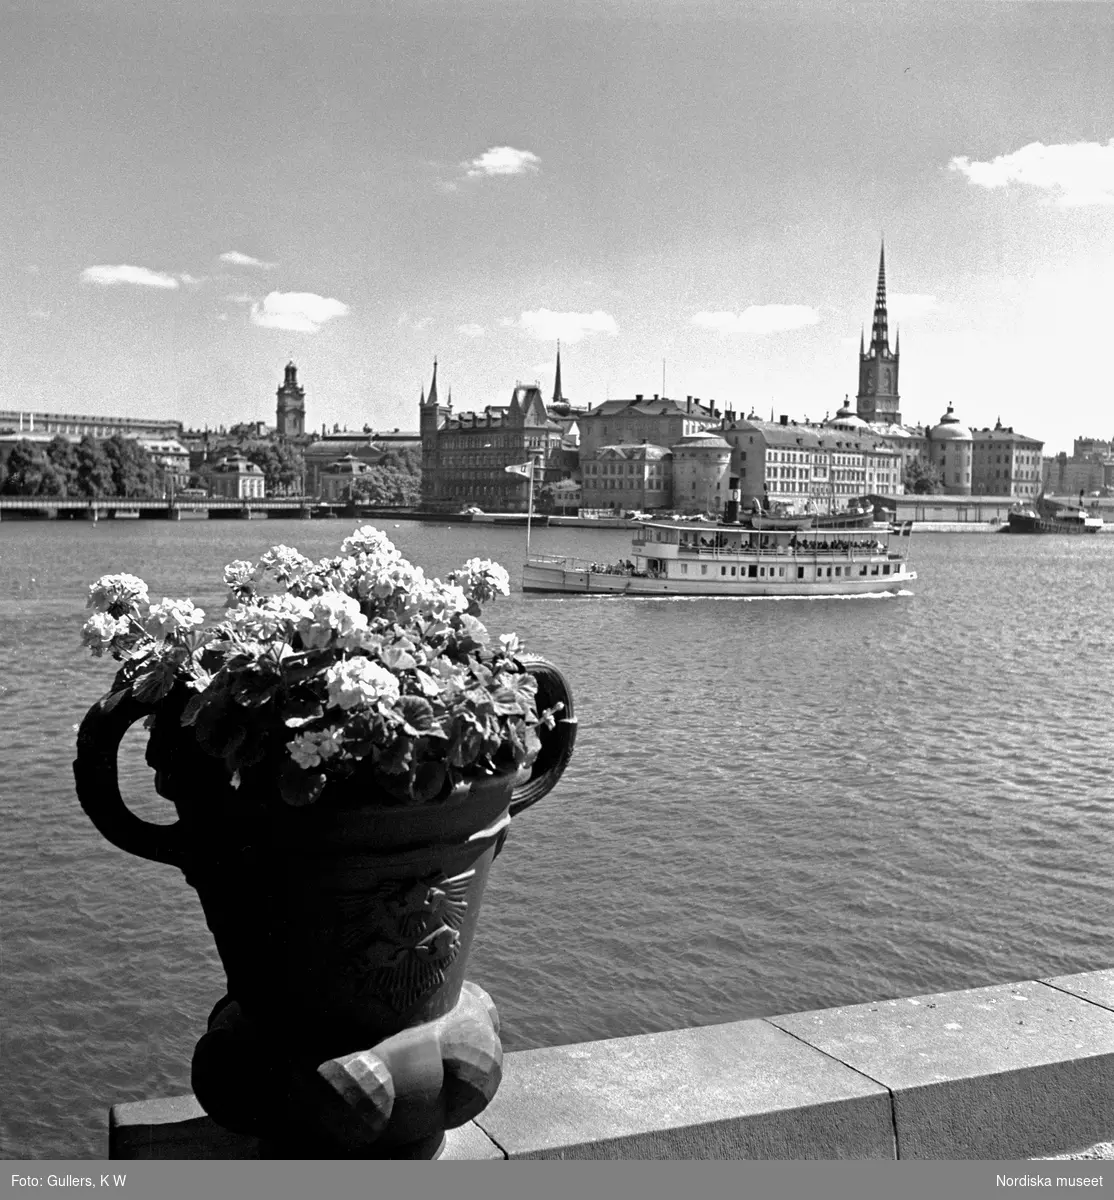 Vy från Stockholms stadshus. Skärgårdsbåt på Riddarfjärden, en blomsterurna i förgrunden, Riddarholmen och Gamla stan i bakgrunden